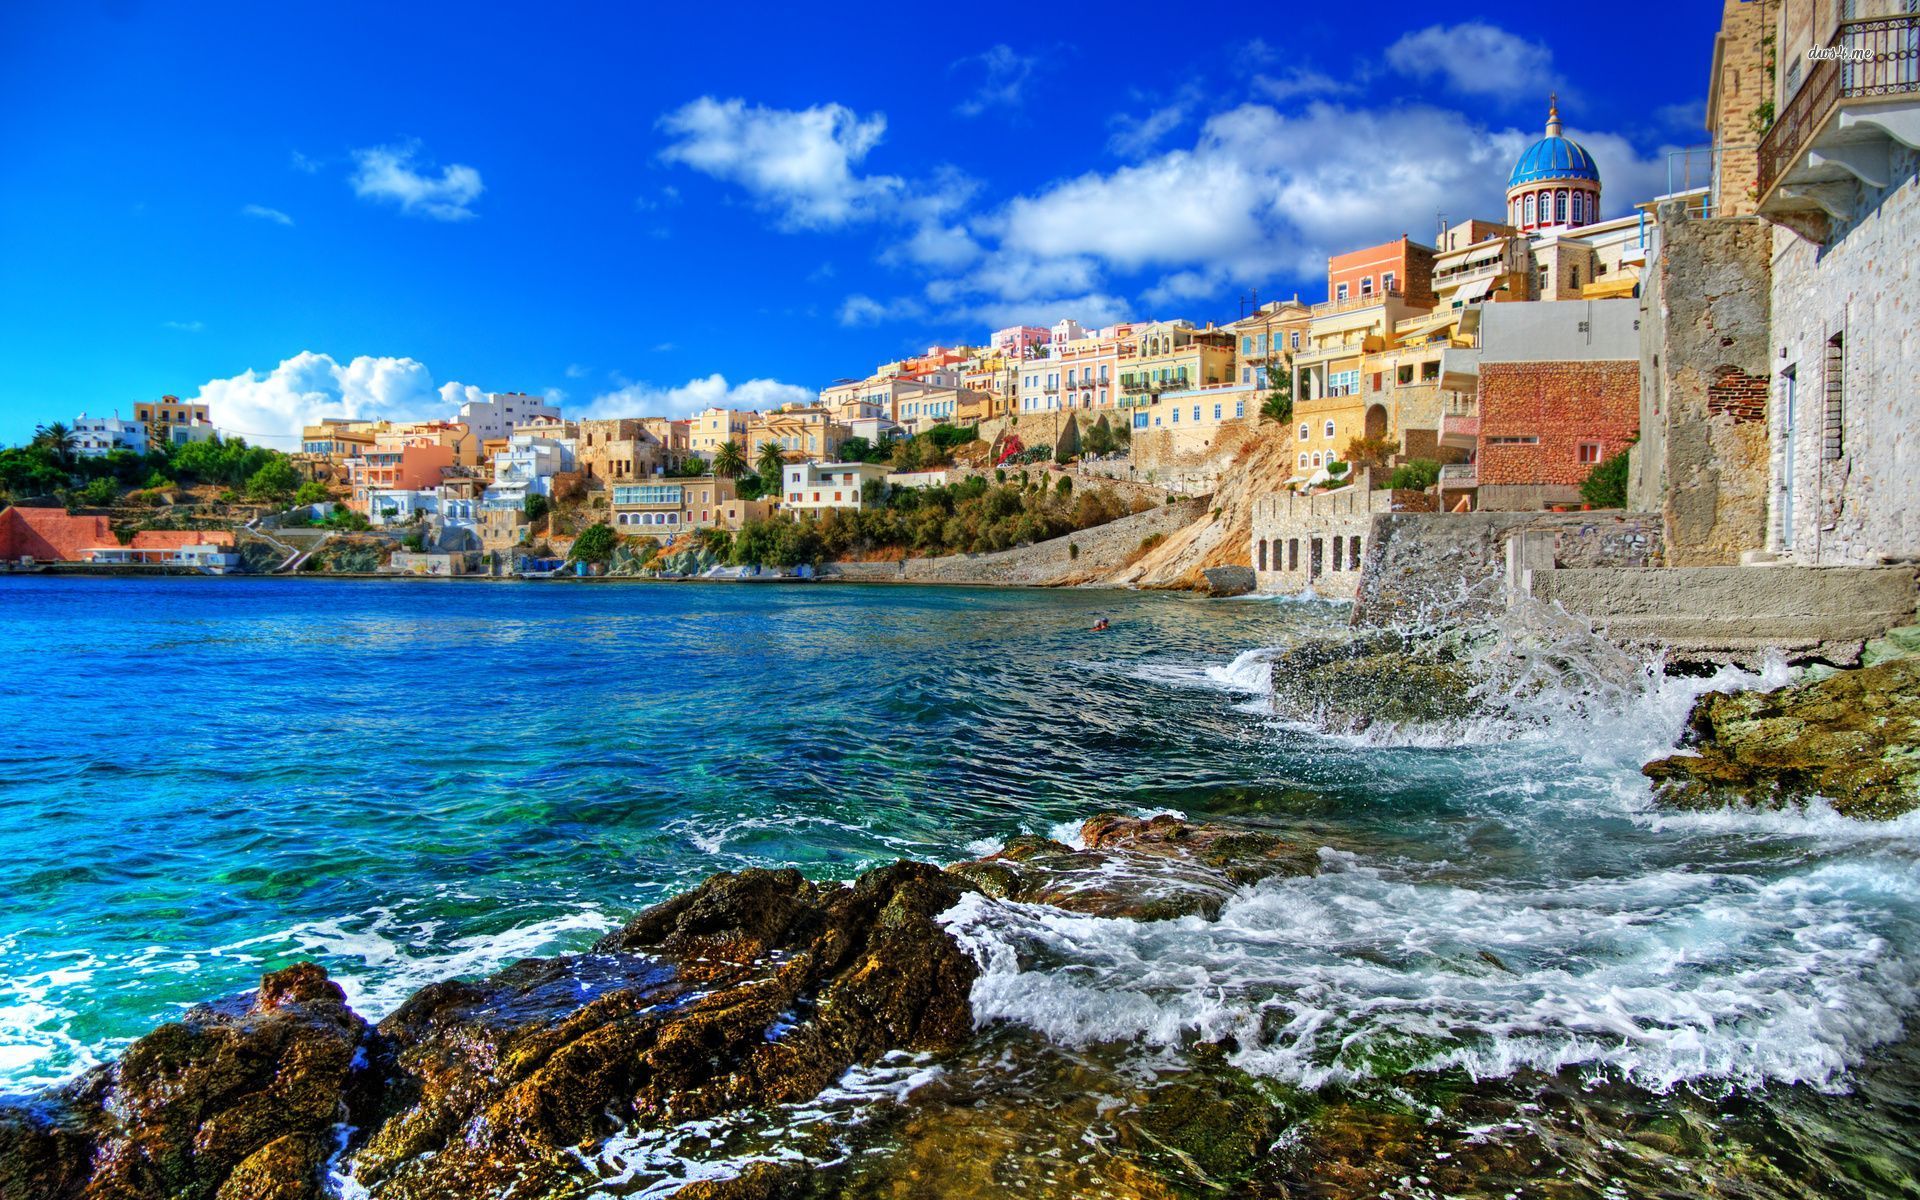 Hình nền bãi biển Hy Lạp sẽ khiến bạn chìm đắm trong vẻ đẹp thiên nhiên hoang sơ và một màu xanh rực rỡ. Chỉ cần ba giây để ngắm nhìn bức tranh tuyệt đẹp này trên màn hình của bạn, bạn sẽ cảm thấy như đang ở thật sự trên bờ biển Hy Lạp.